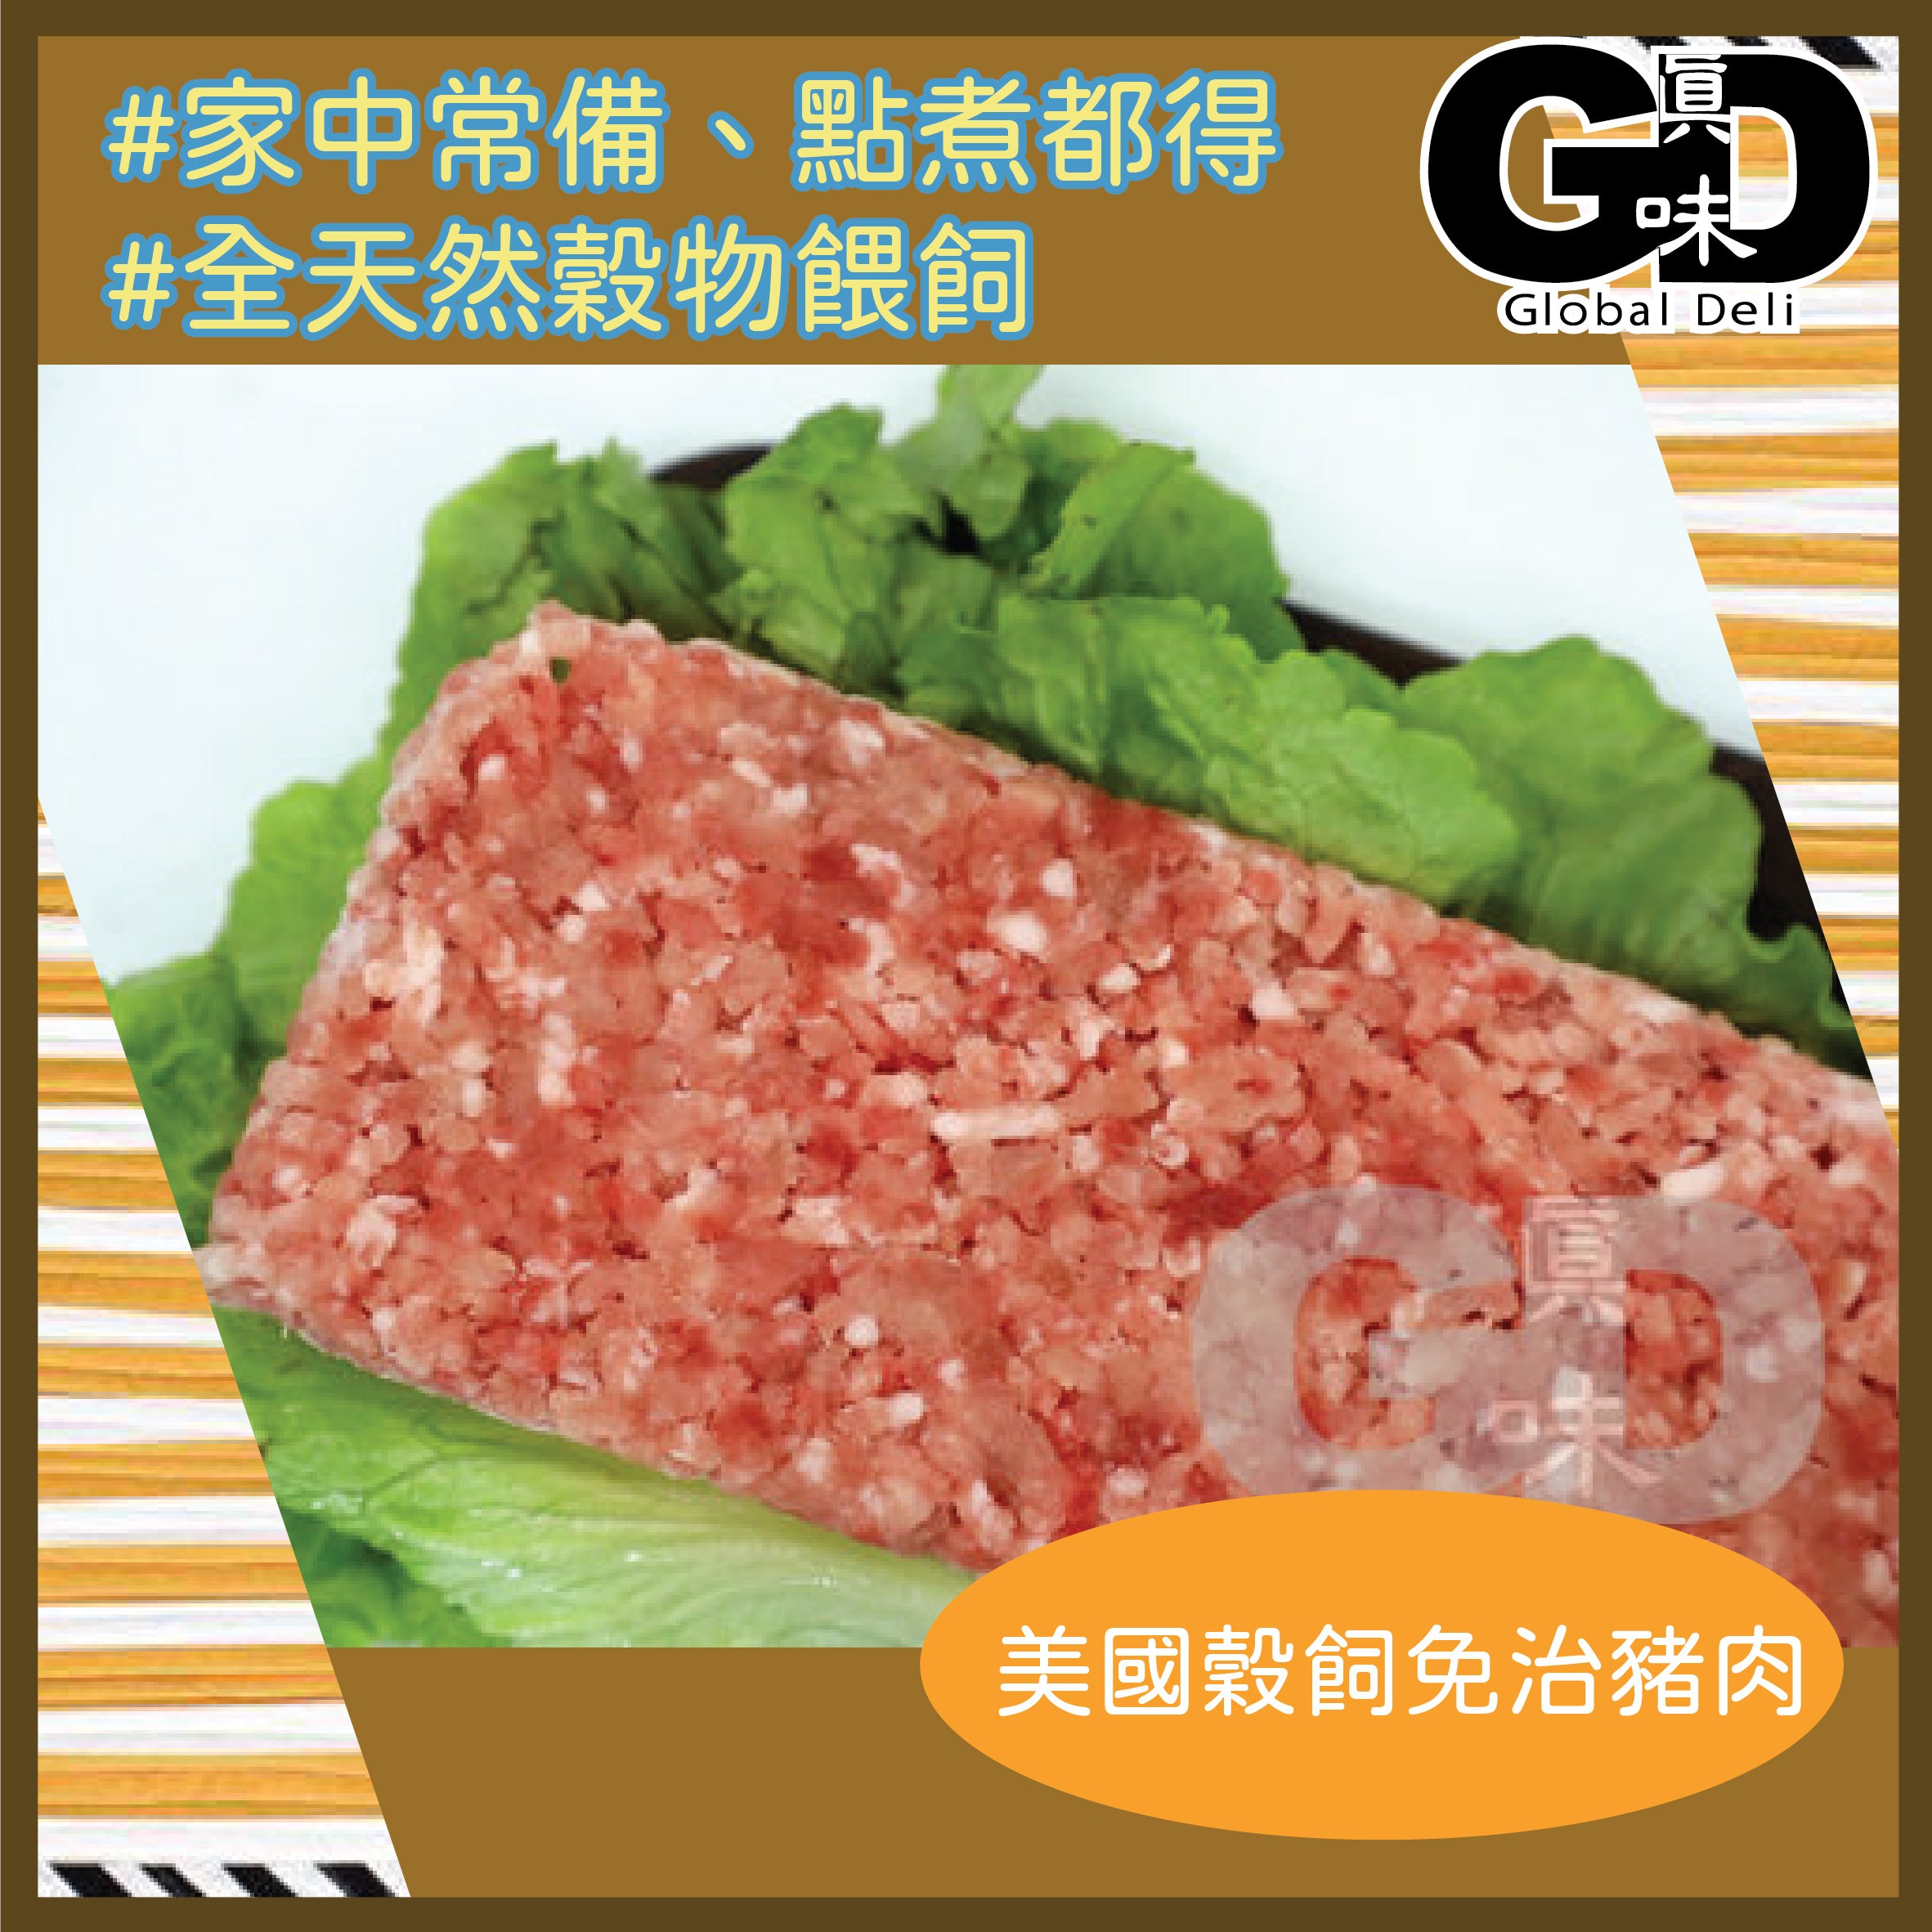 #5083 美國谷飼免治豬肉(450G) US Grain Feb Minced Pork